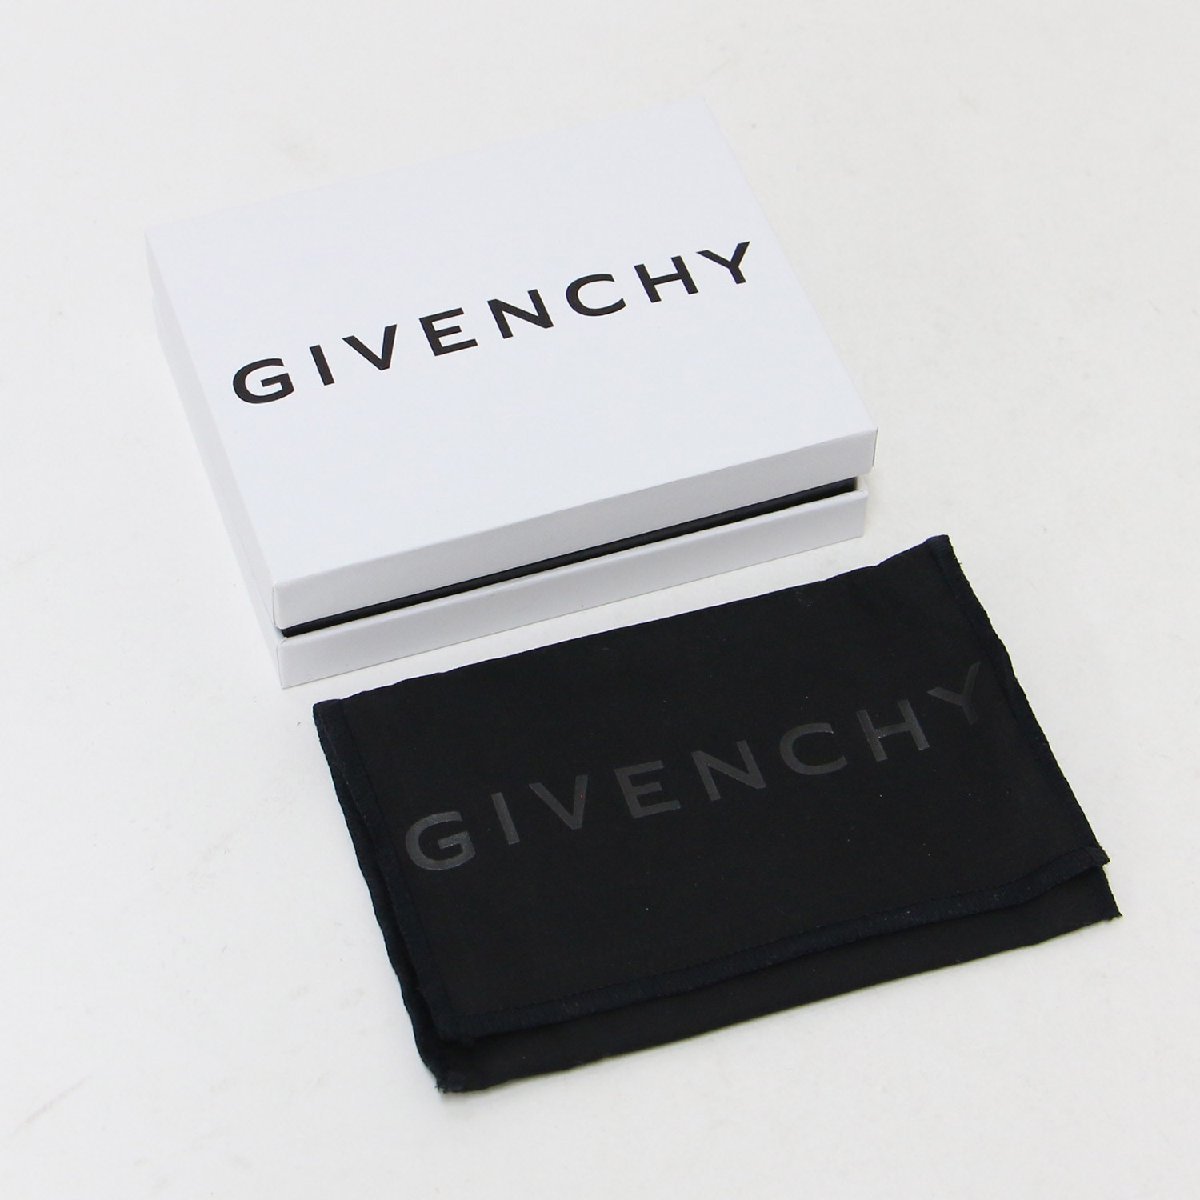 GIVENCHY ジバンシィ カードケース カードホルダー ベージュ 4G ロゴ レザー イタリア製 ブランド アイテム 小物_画像4